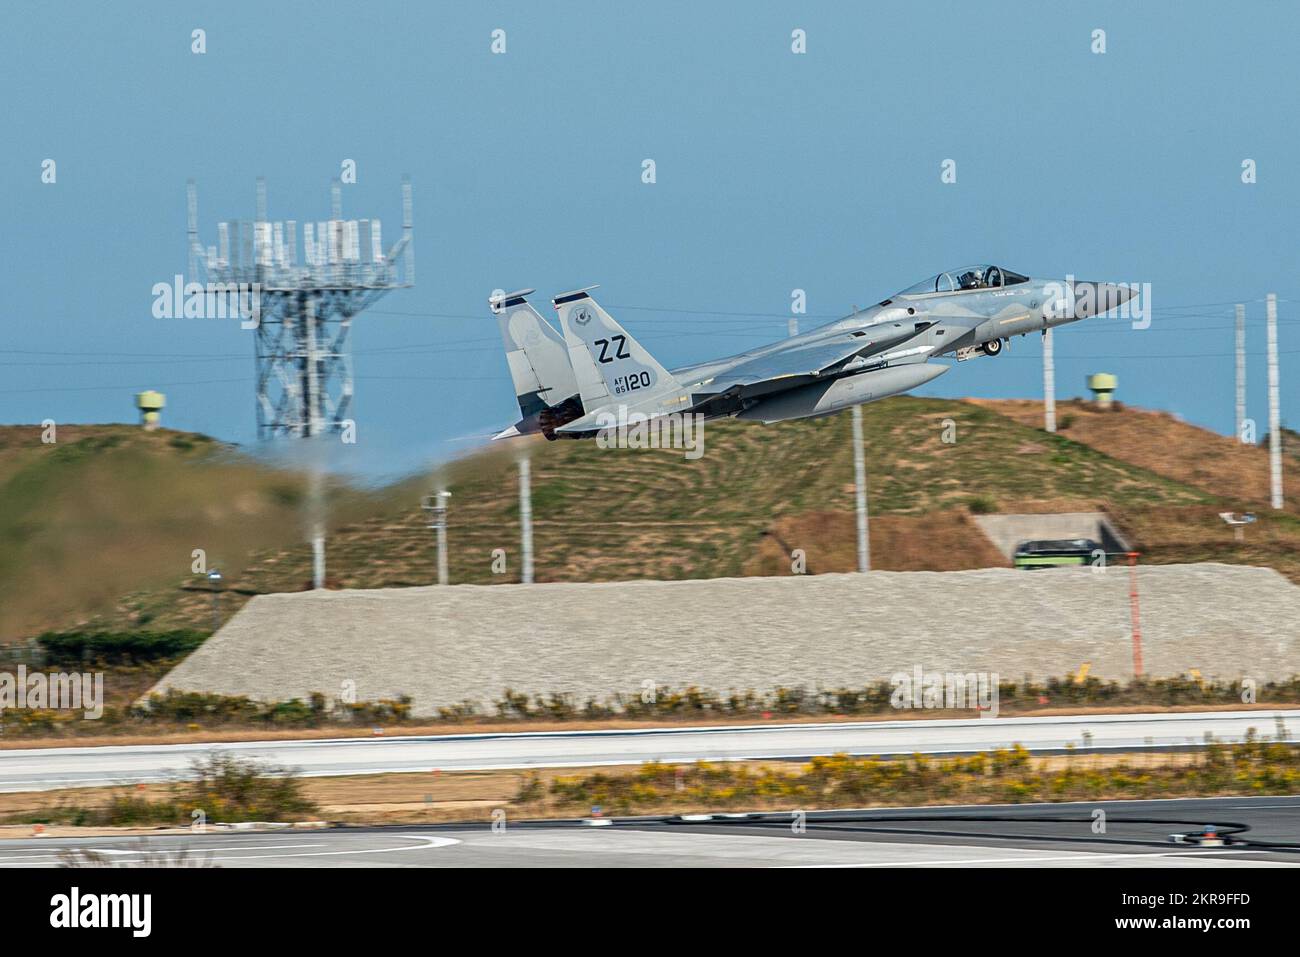 A ÉTATS-UNIS L'aigle F-15C de la Force aérienne affecté à l'escadron de chasseurs 67th prend son envol pendant le programme de réinstallation de l'entraînement aérien à la base aérienne de Tsuiki de la Force d'autodéfense aérienne du Japon, Fukuoka (Japon), le 10 novembre 2022. Le programme de relocalisation de la formation à l'aviation a permis aux forces américaines et de la JASDF de renforcer les relations et de développer la confiance mutuelle, ce qui a finalement permis de renforcer l'Alliance de sécurité entre les États-Unis et le Japon. Banque D'Images